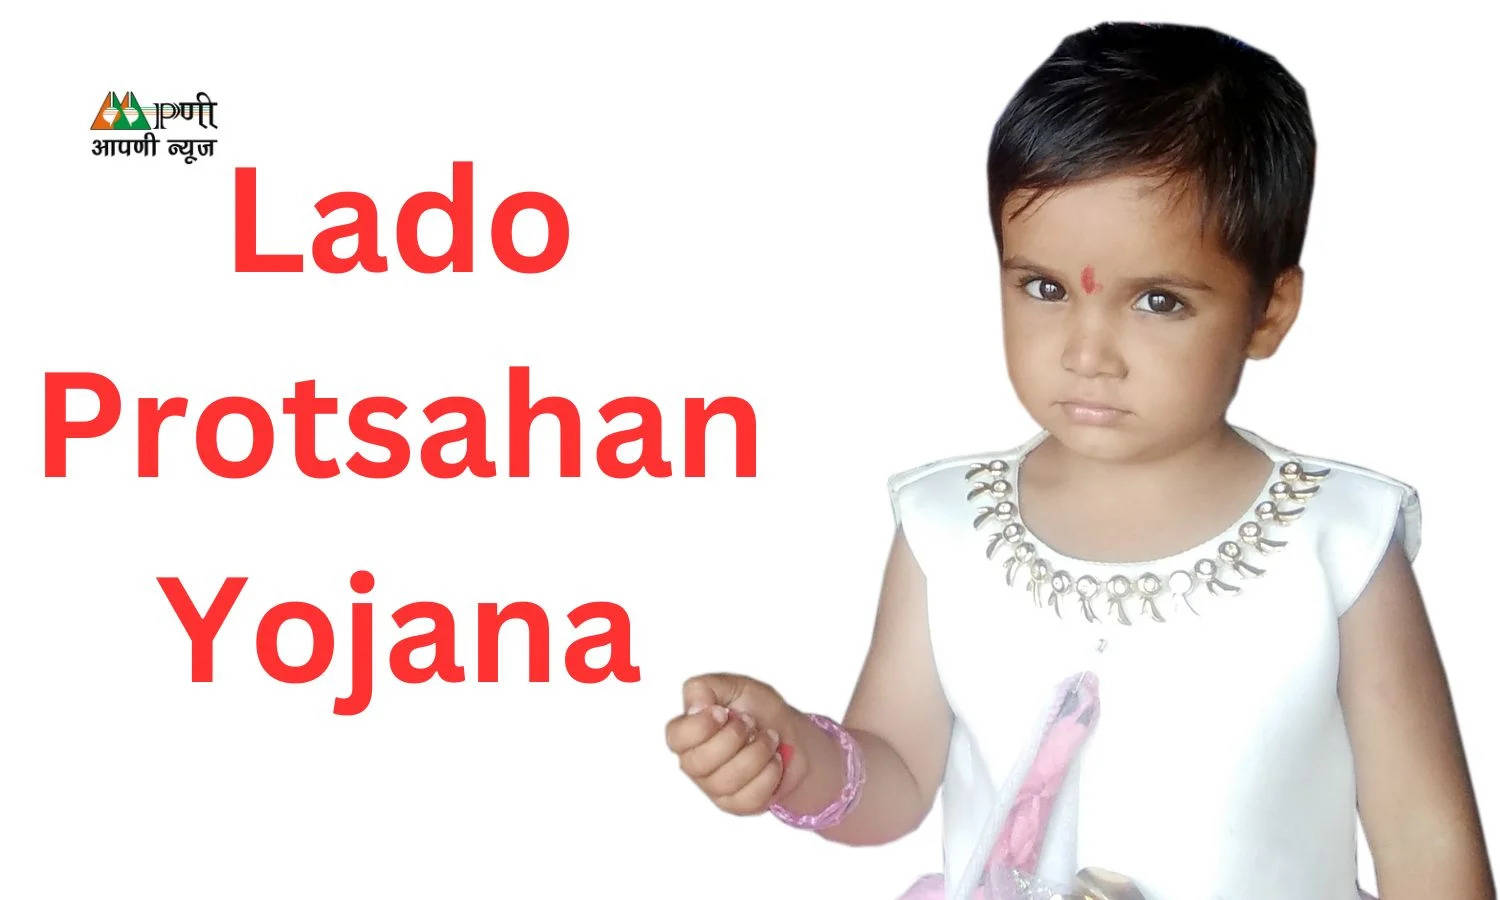 Lado Protsahan Yojana: सरकार बेटियों को देगी 2 लाख रूपये, जानें योजना के बारे में